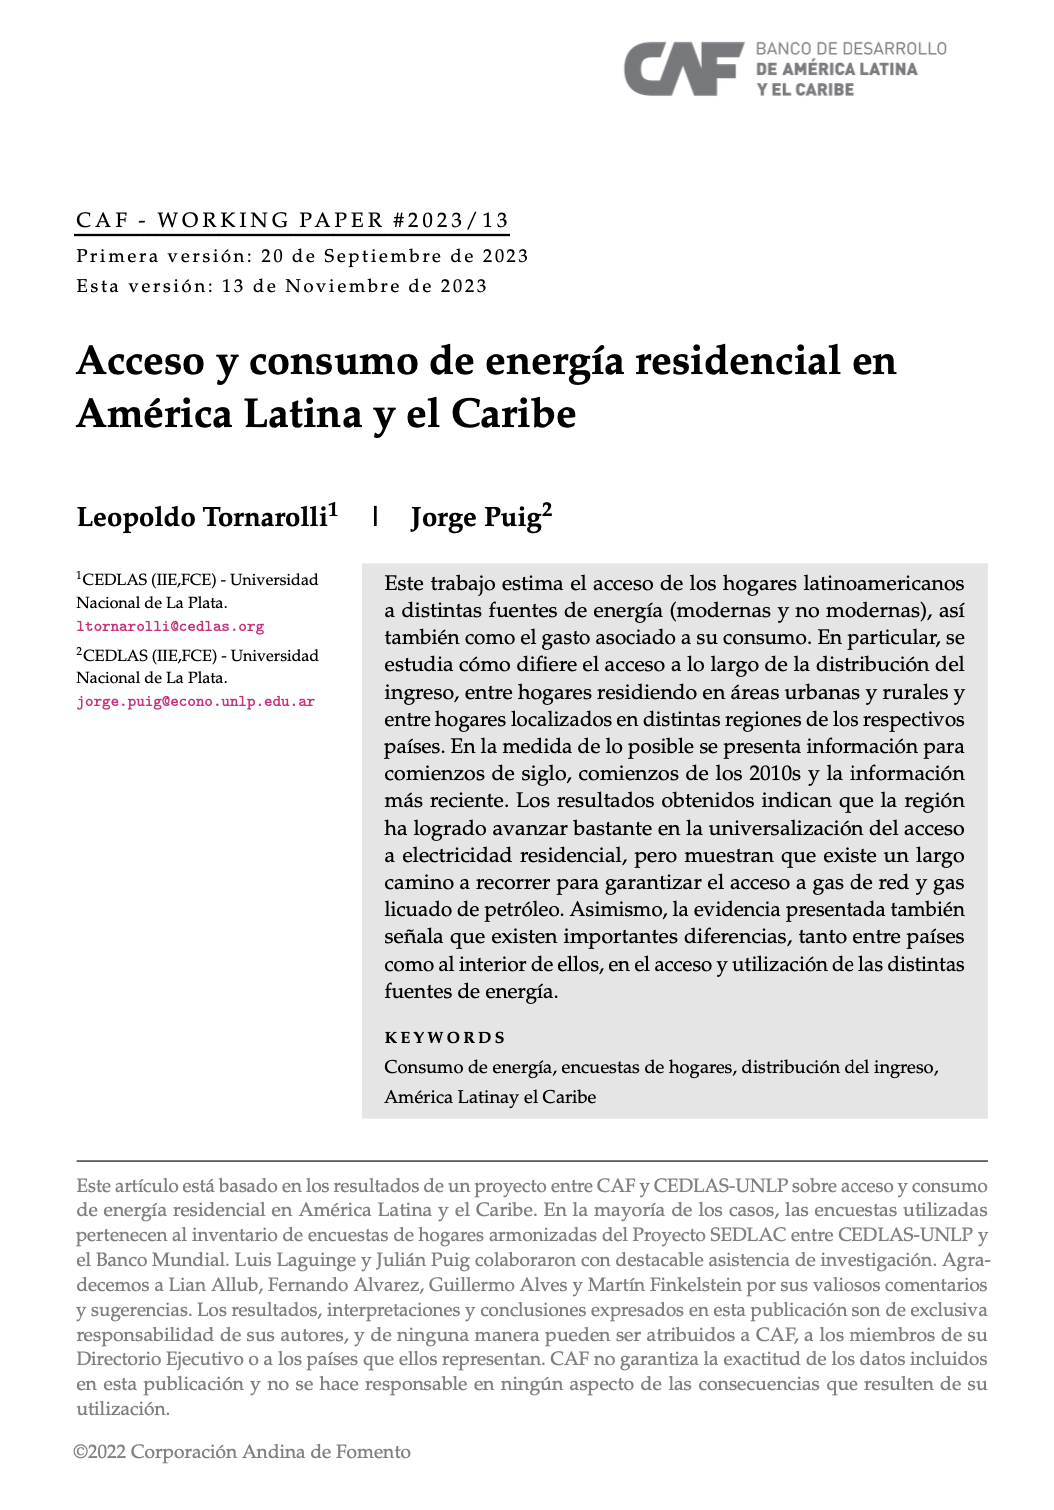 Acceso y consumo de energía residencial en América Latina y el Caribe